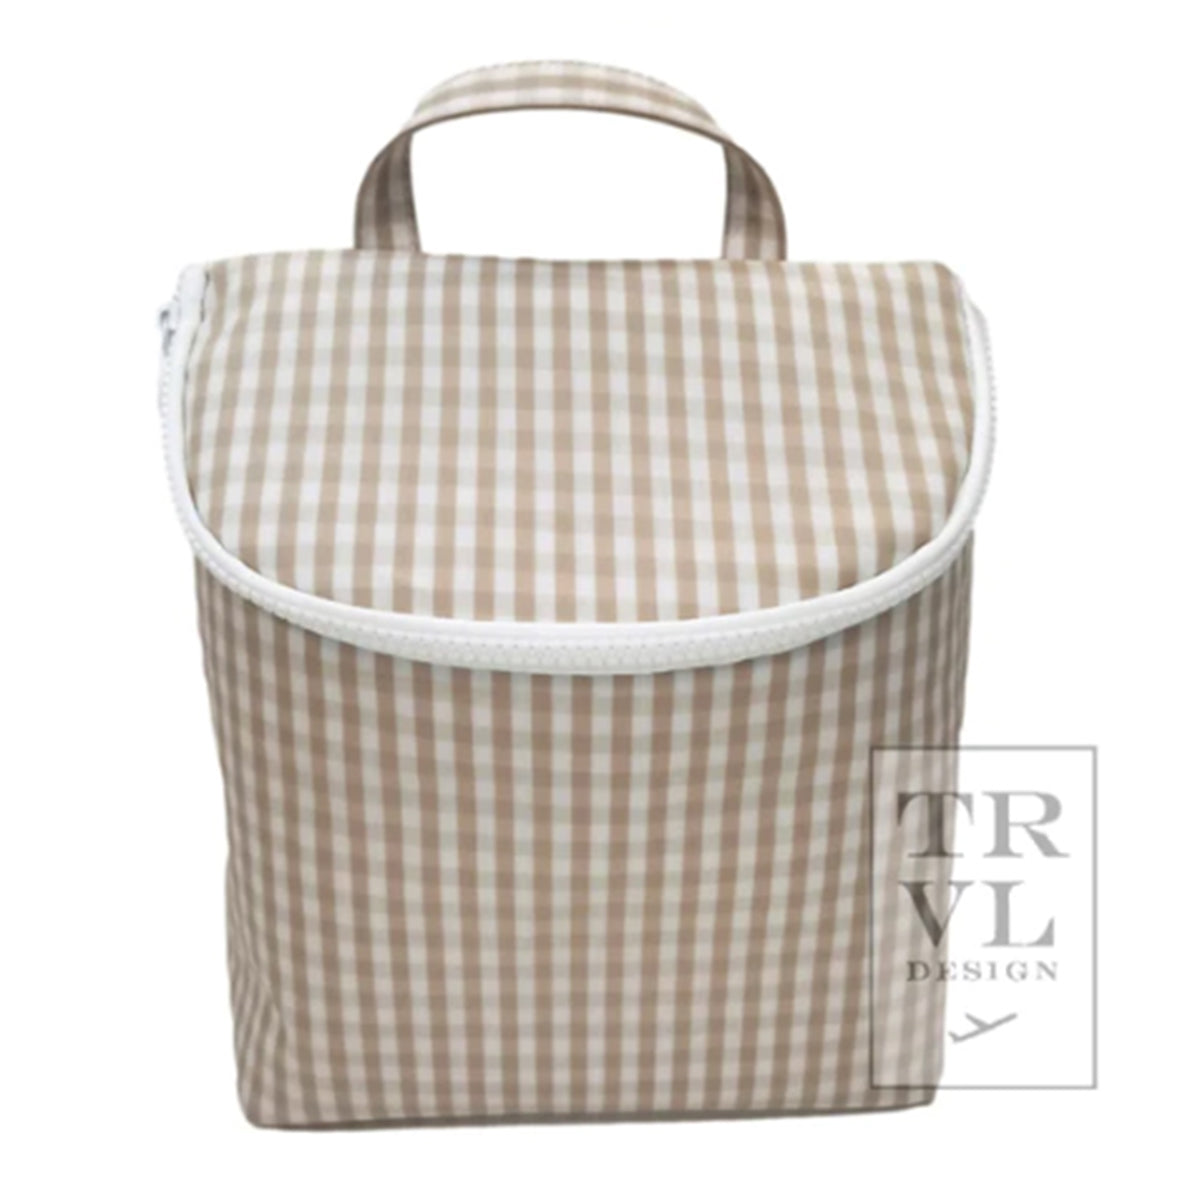 TRVL Design Take Away Khaki Gingham Check Insulated Bag